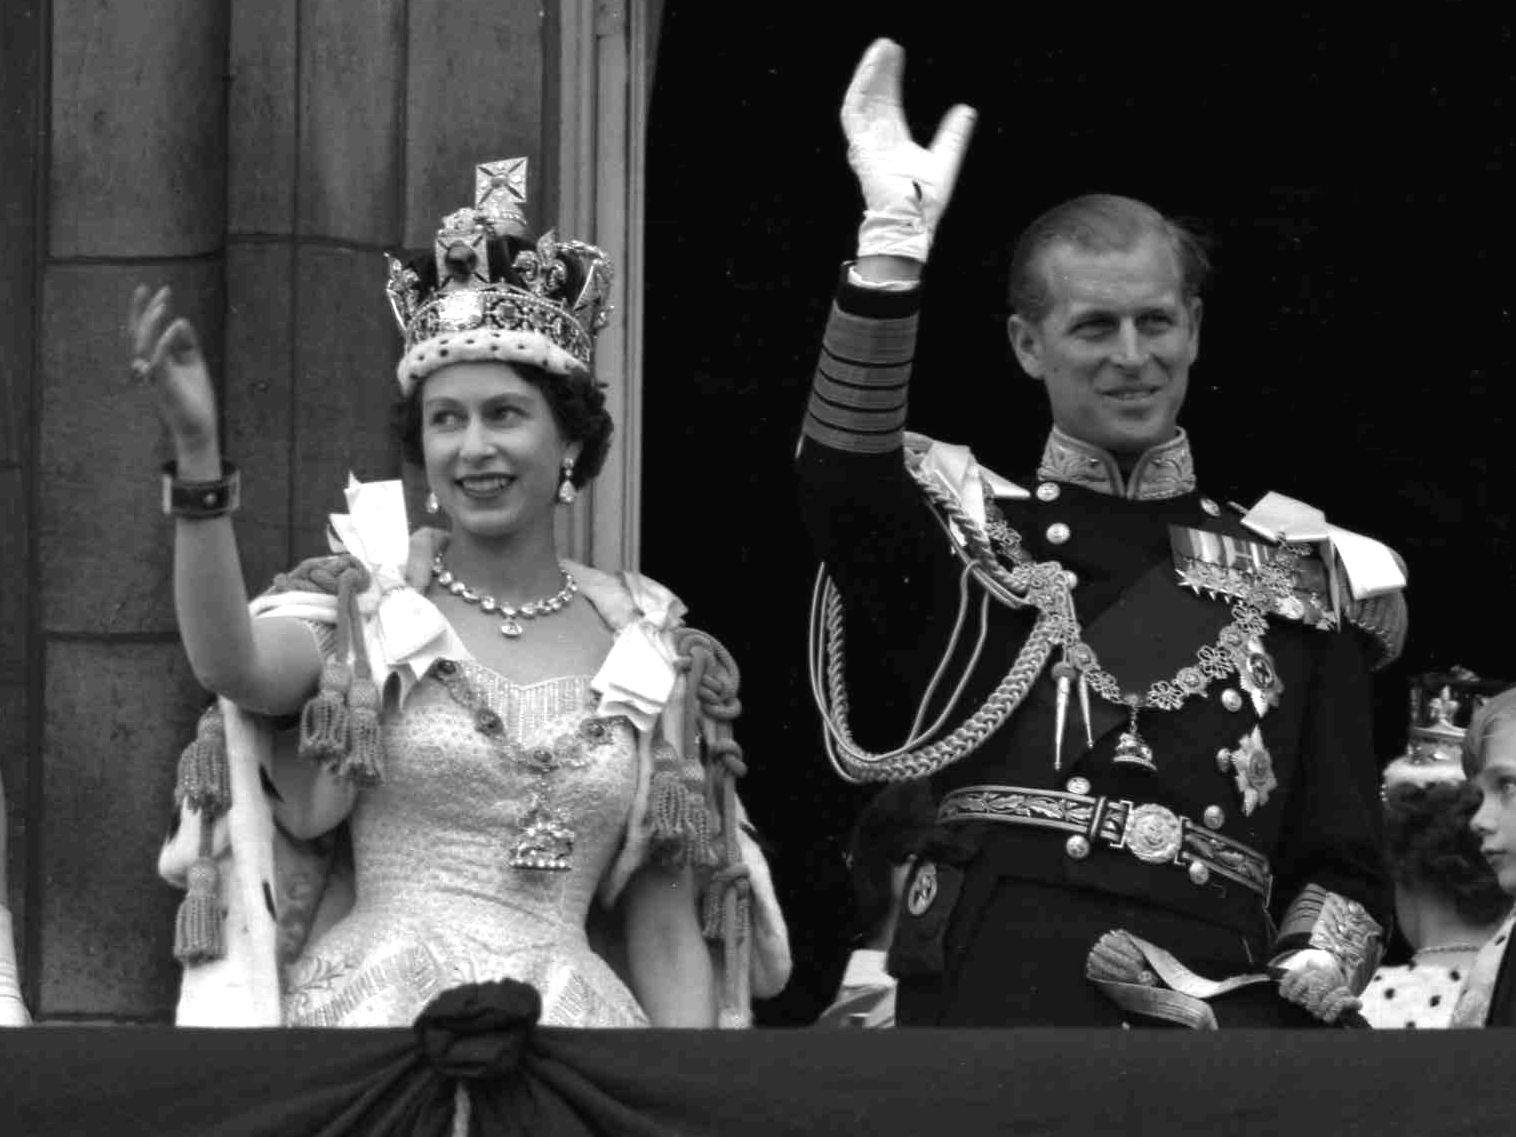 Princess Elizabeth Becomes Queen at Age 25